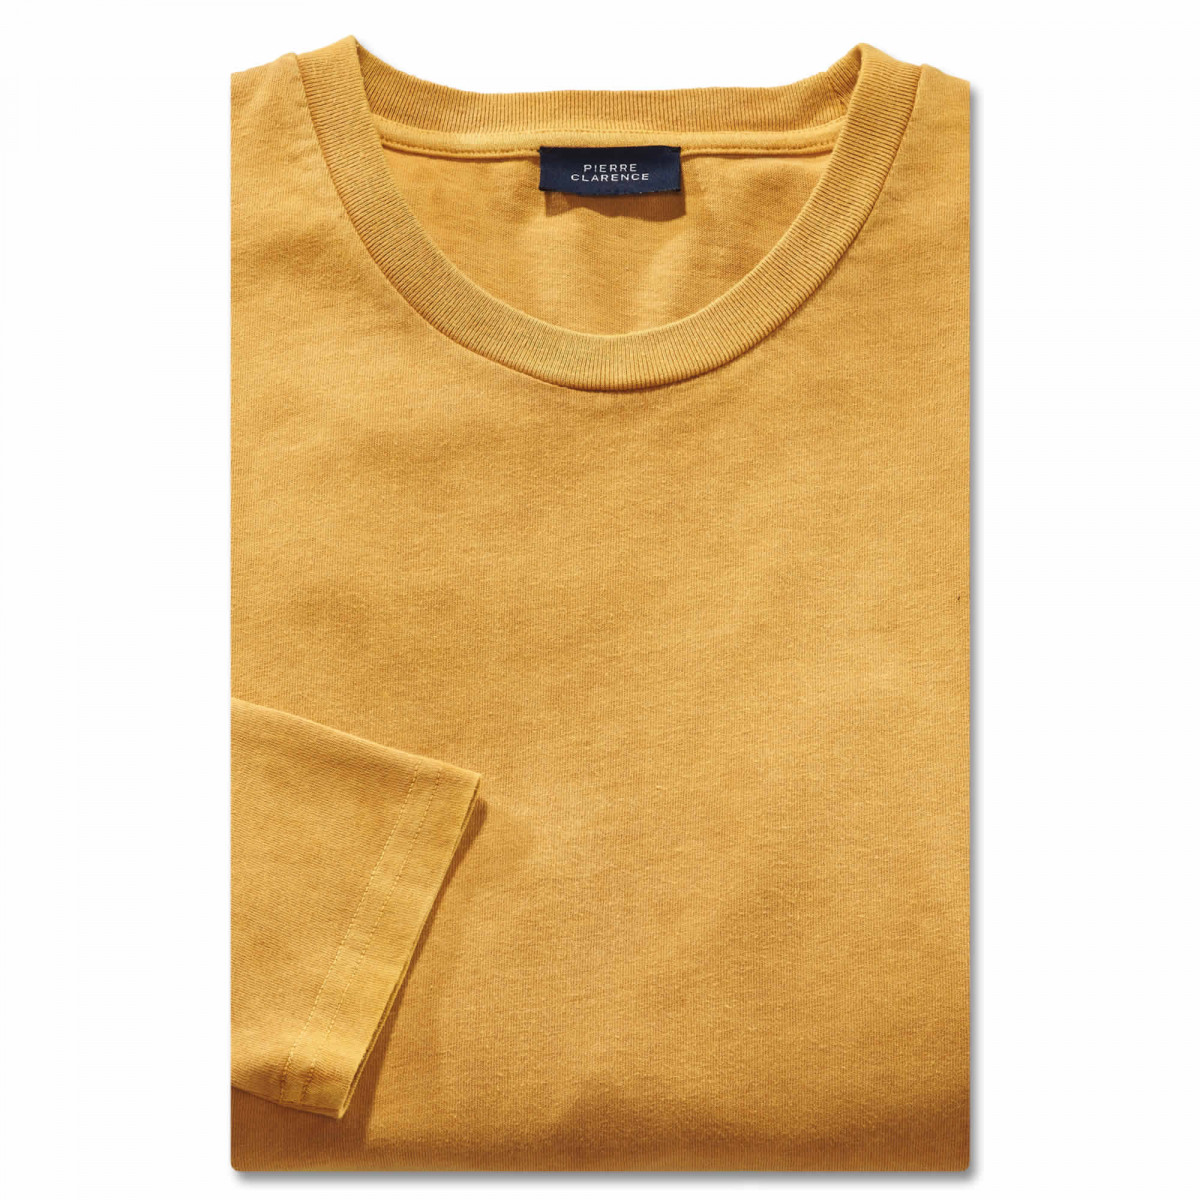 Tee-shirt coton 128/132 (3XL) Jaune